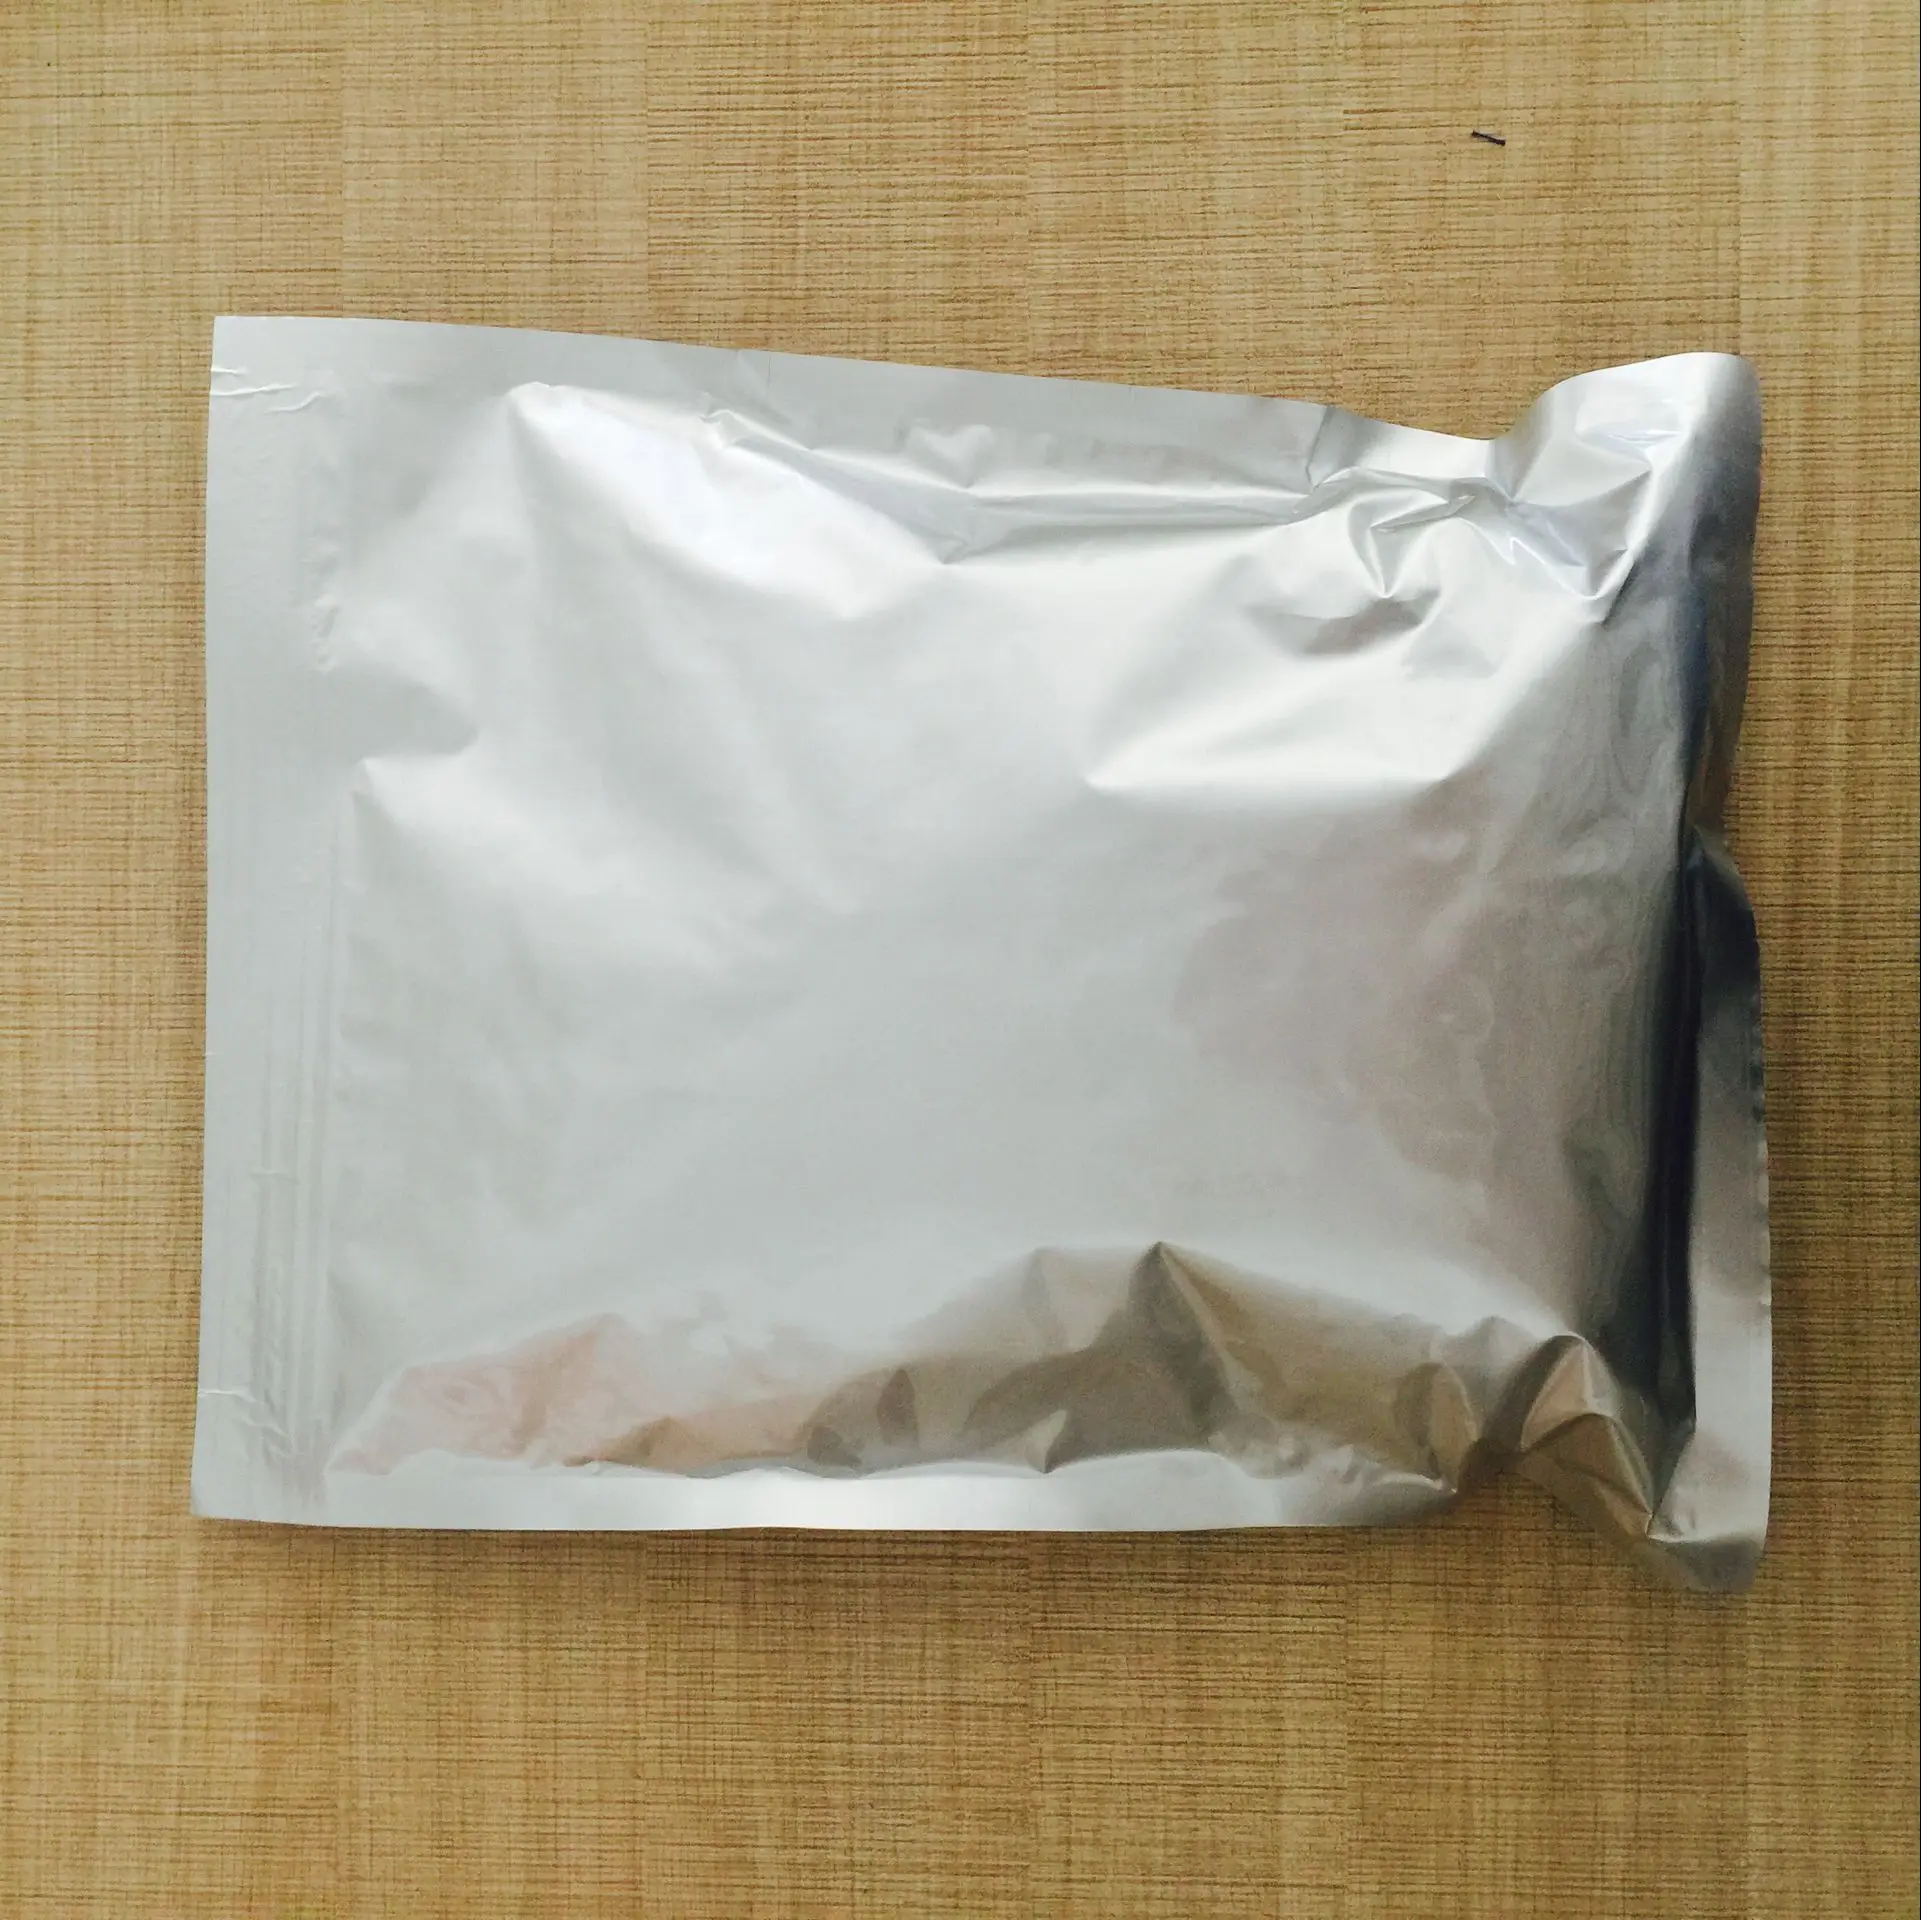 特典進呈 比色試薬thallium Arsenate 3,3 '-dimethylbenzidine Dihydrochloride With Cas  612-82-8 Thallium Arsenate Buy 3- Dimethylbenzidine Dihydrochloride,Cas  612-82-8,Thallium Arsenate Product